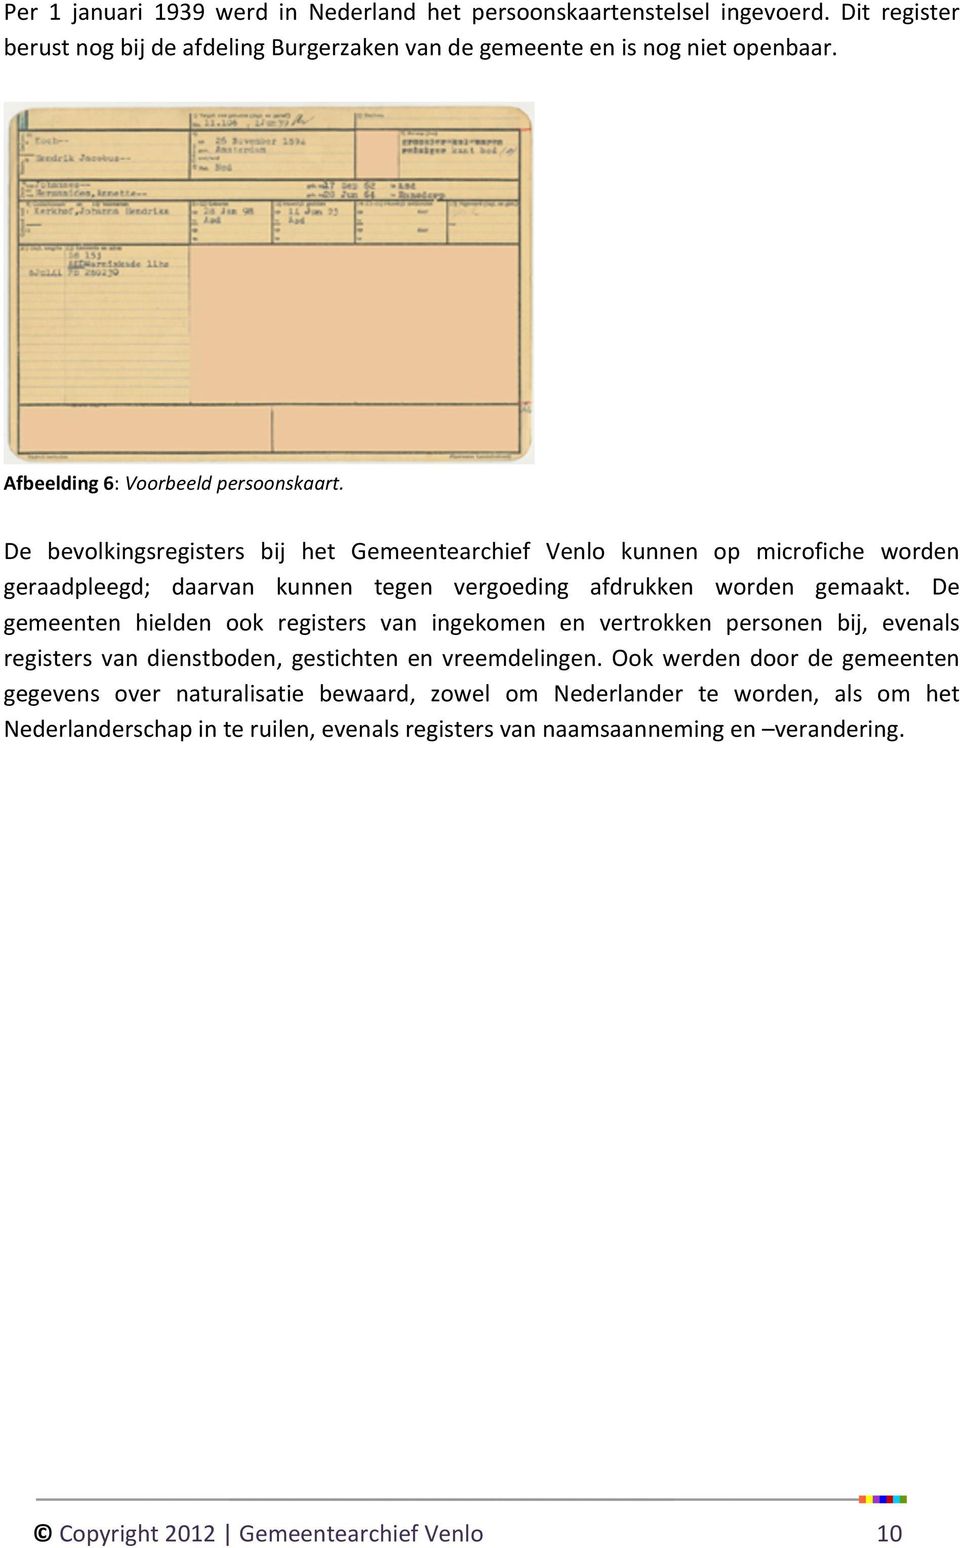 De bevolkingsregisters bij het Gemeentearchief Venlo kunnen op microfiche worden geraadpleegd; daarvan kunnen tegen vergoeding afdrukken worden gemaakt.